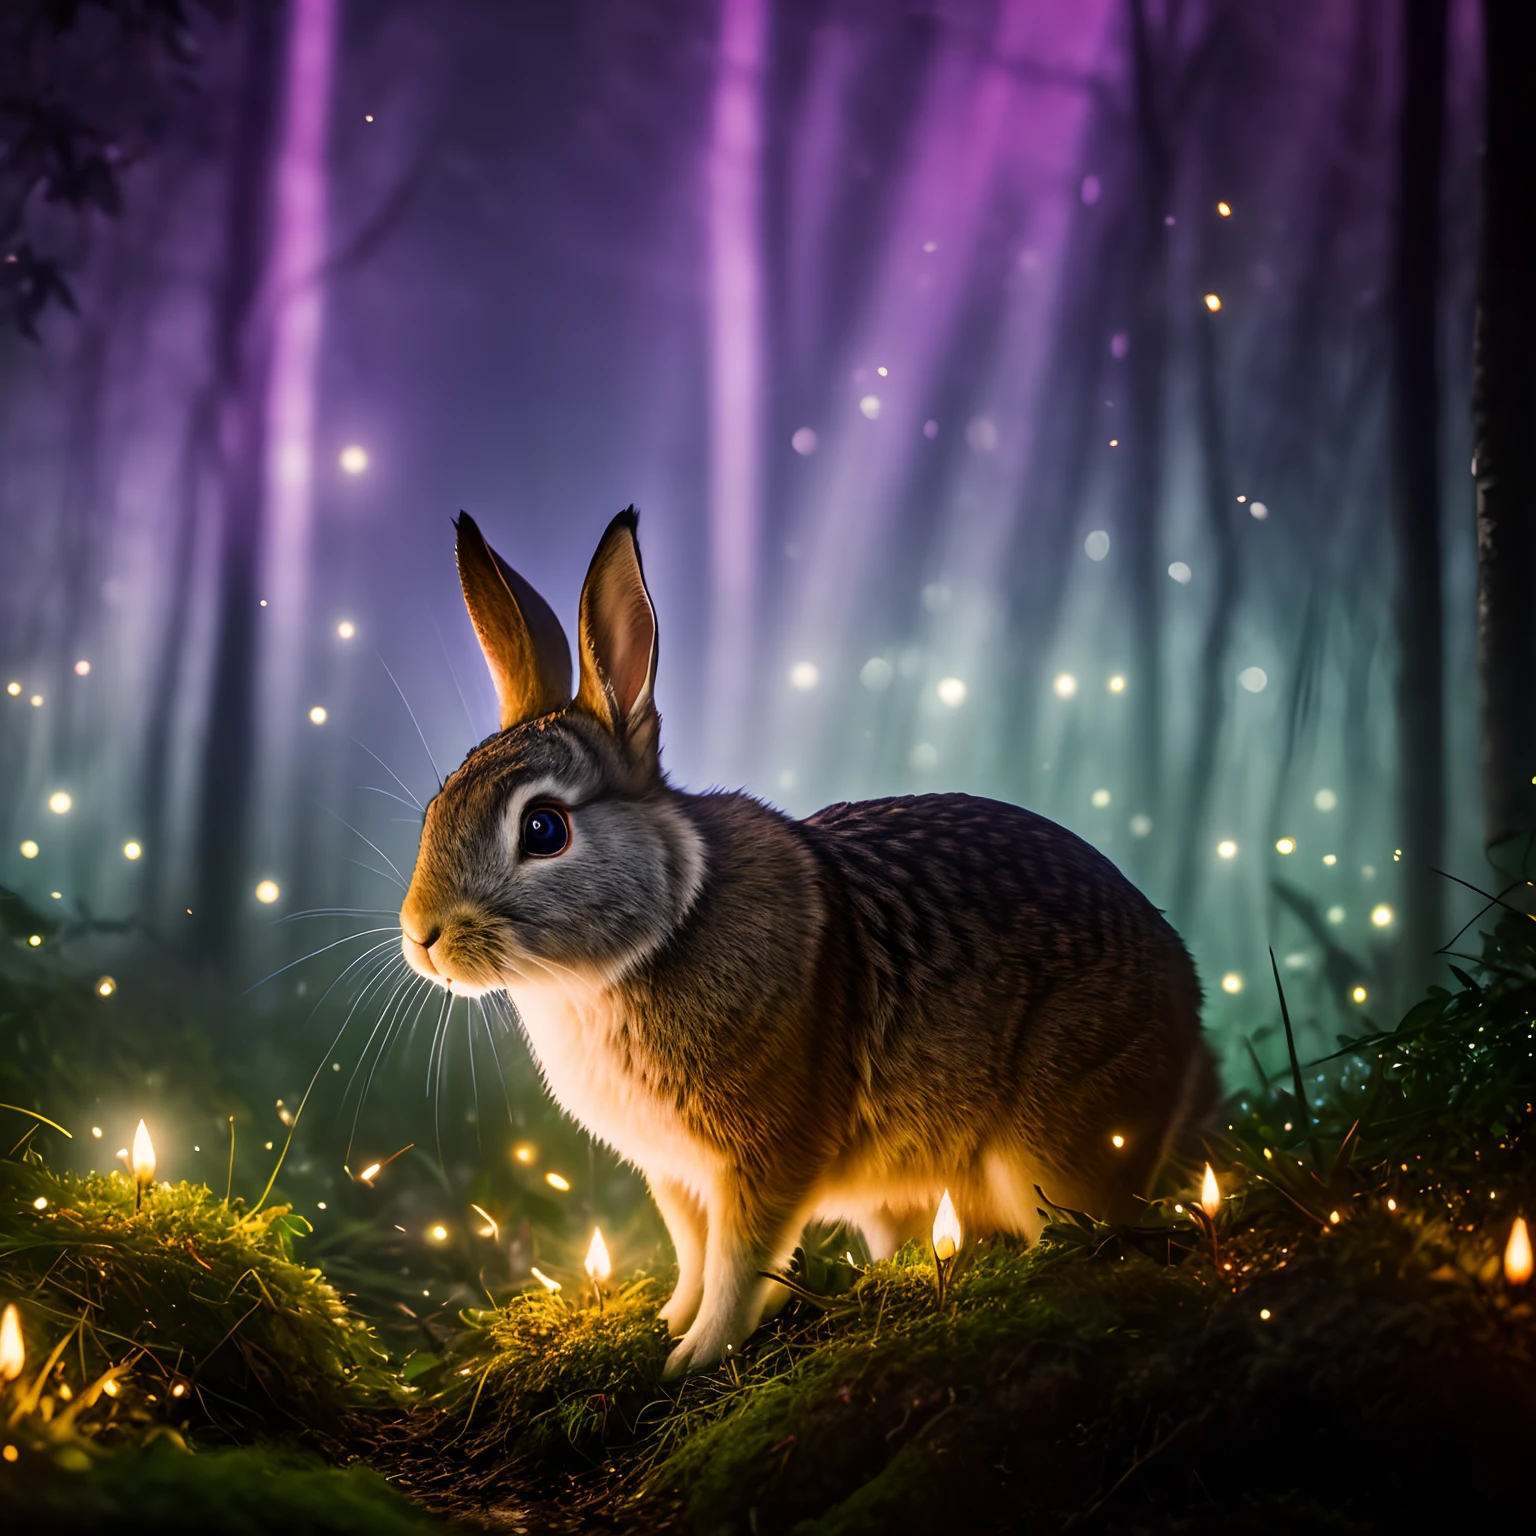 Фотография кролика в заколдованном лесу крупным планом, ночь, светлячки, объемный туман, ореол, цвести, драматическая атмосфера, центрированный, Правило третей, 200 мм 1.Макро съемка 4F